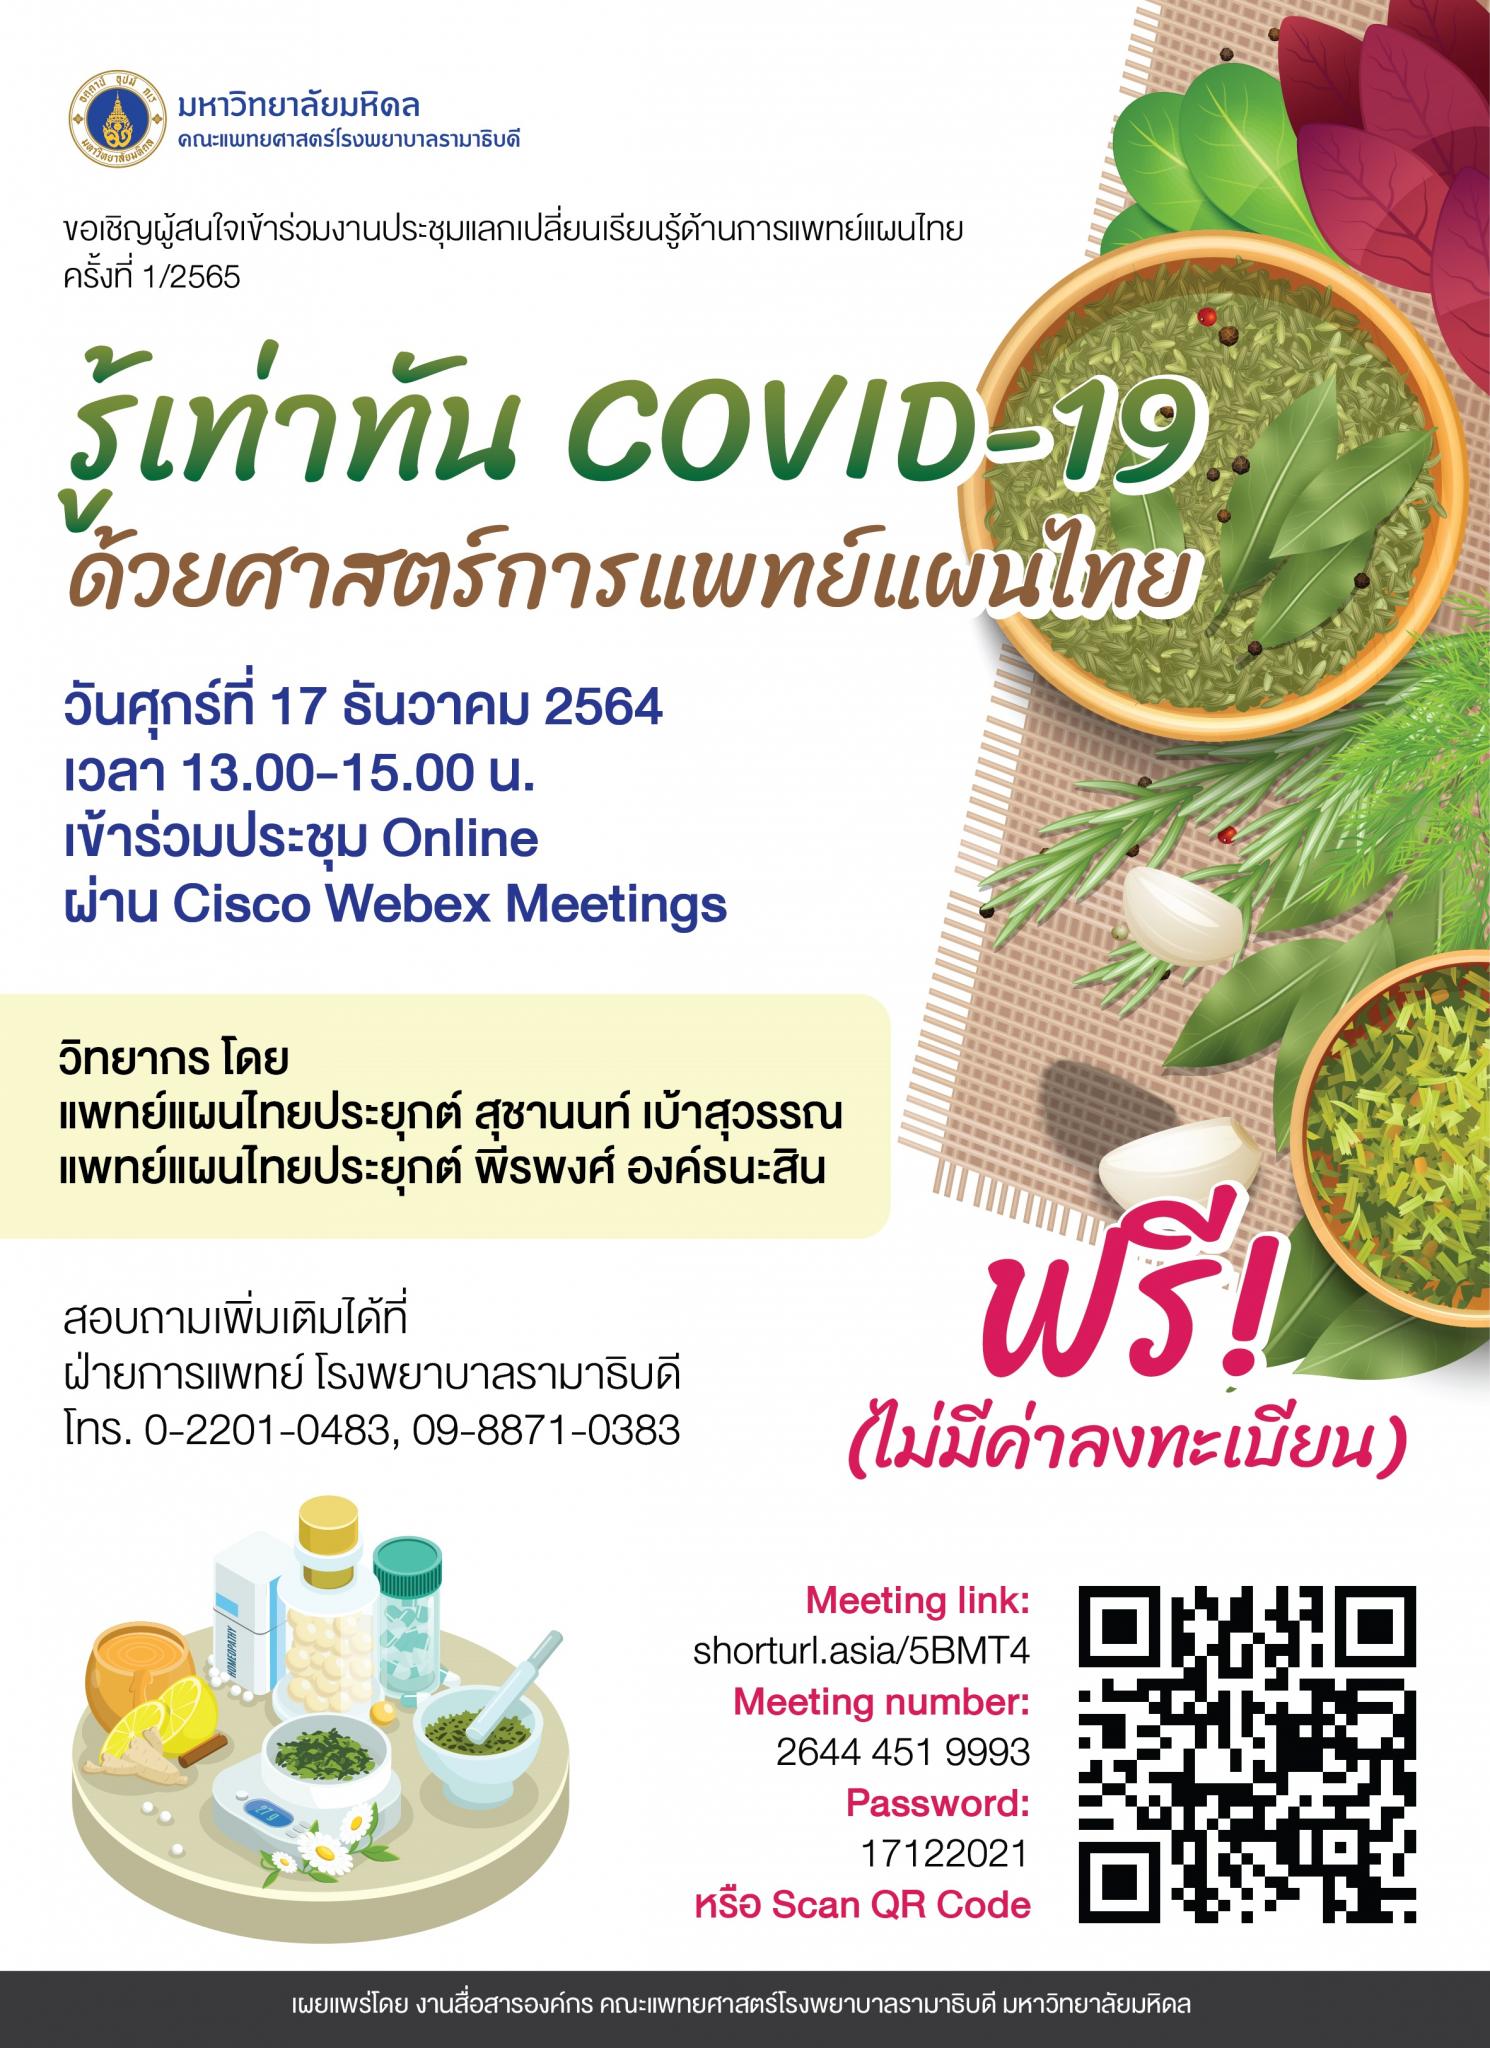 รู้เท่าทัน COVID-19 ด้วยศาสตร์การแพทย์แผนไทย